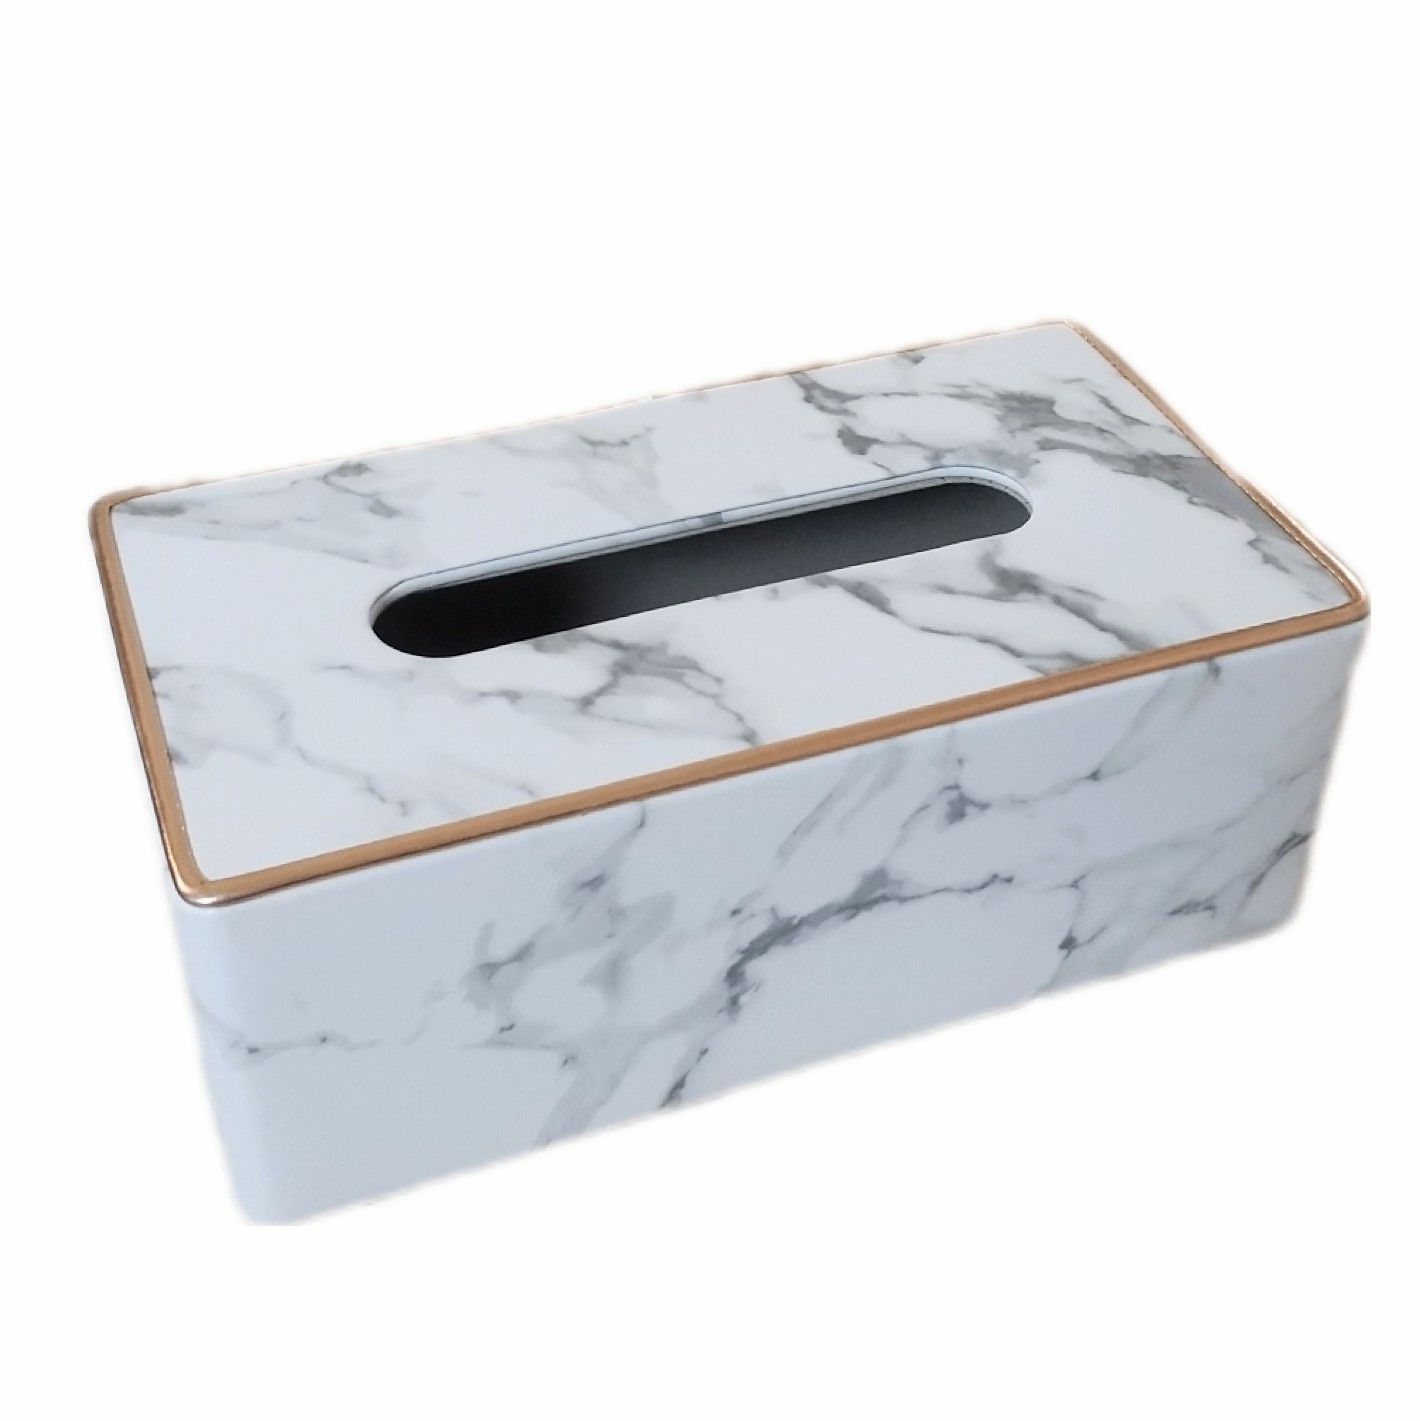 新着 ティッシュケース レザー マーブルホワイト 大理石 おしゃれ ティッシュボックス 箱ごと入る マグネット カバー レザー風 PU素材 ケース  ティッシュ 収納 ギフト